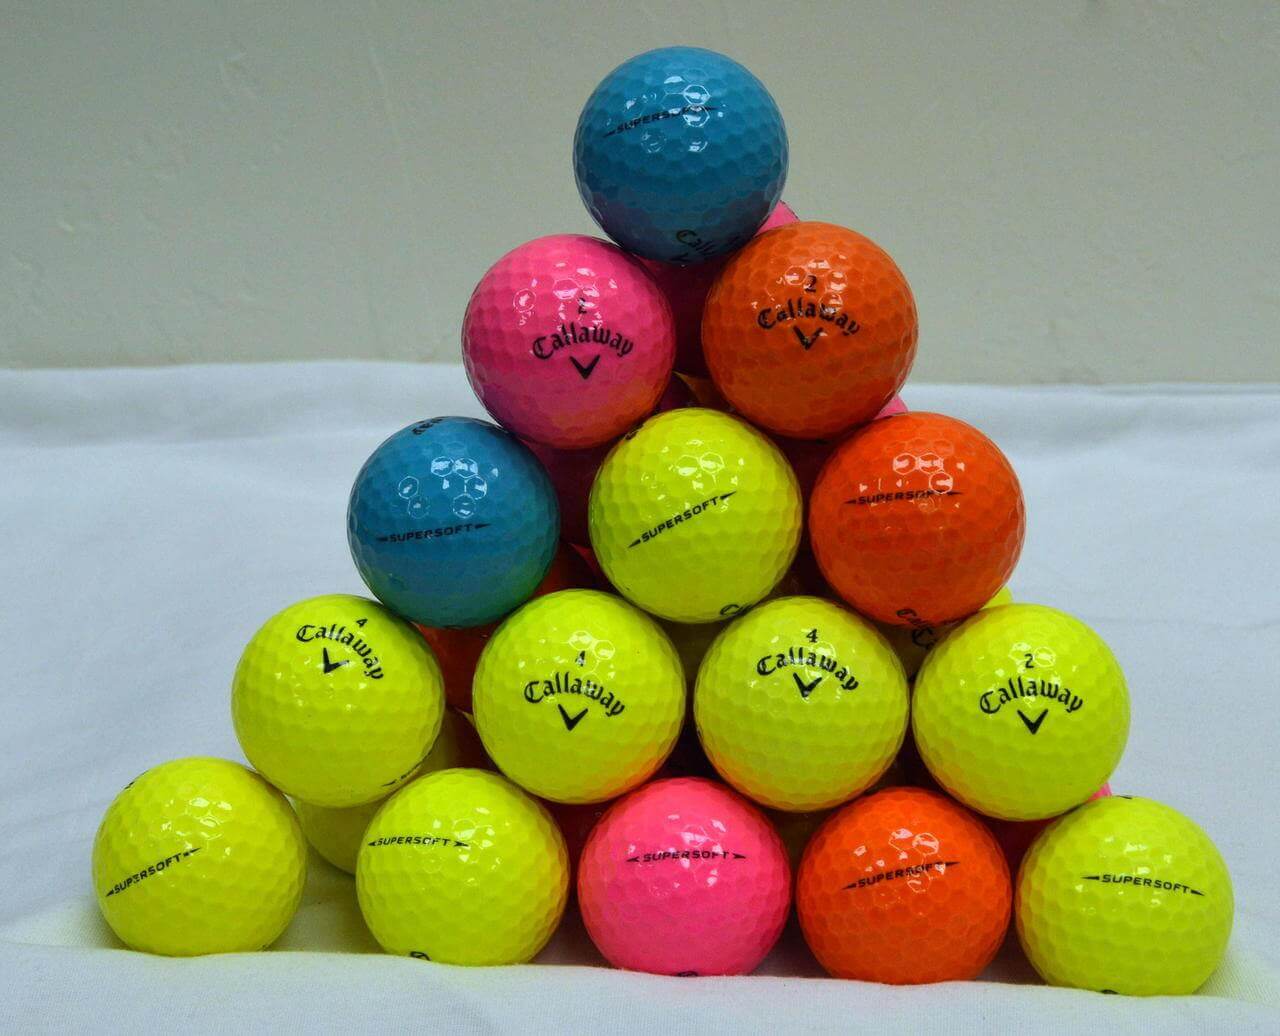 CALLAWAY SuperSoft Golf Balls 2024 Active Golfers